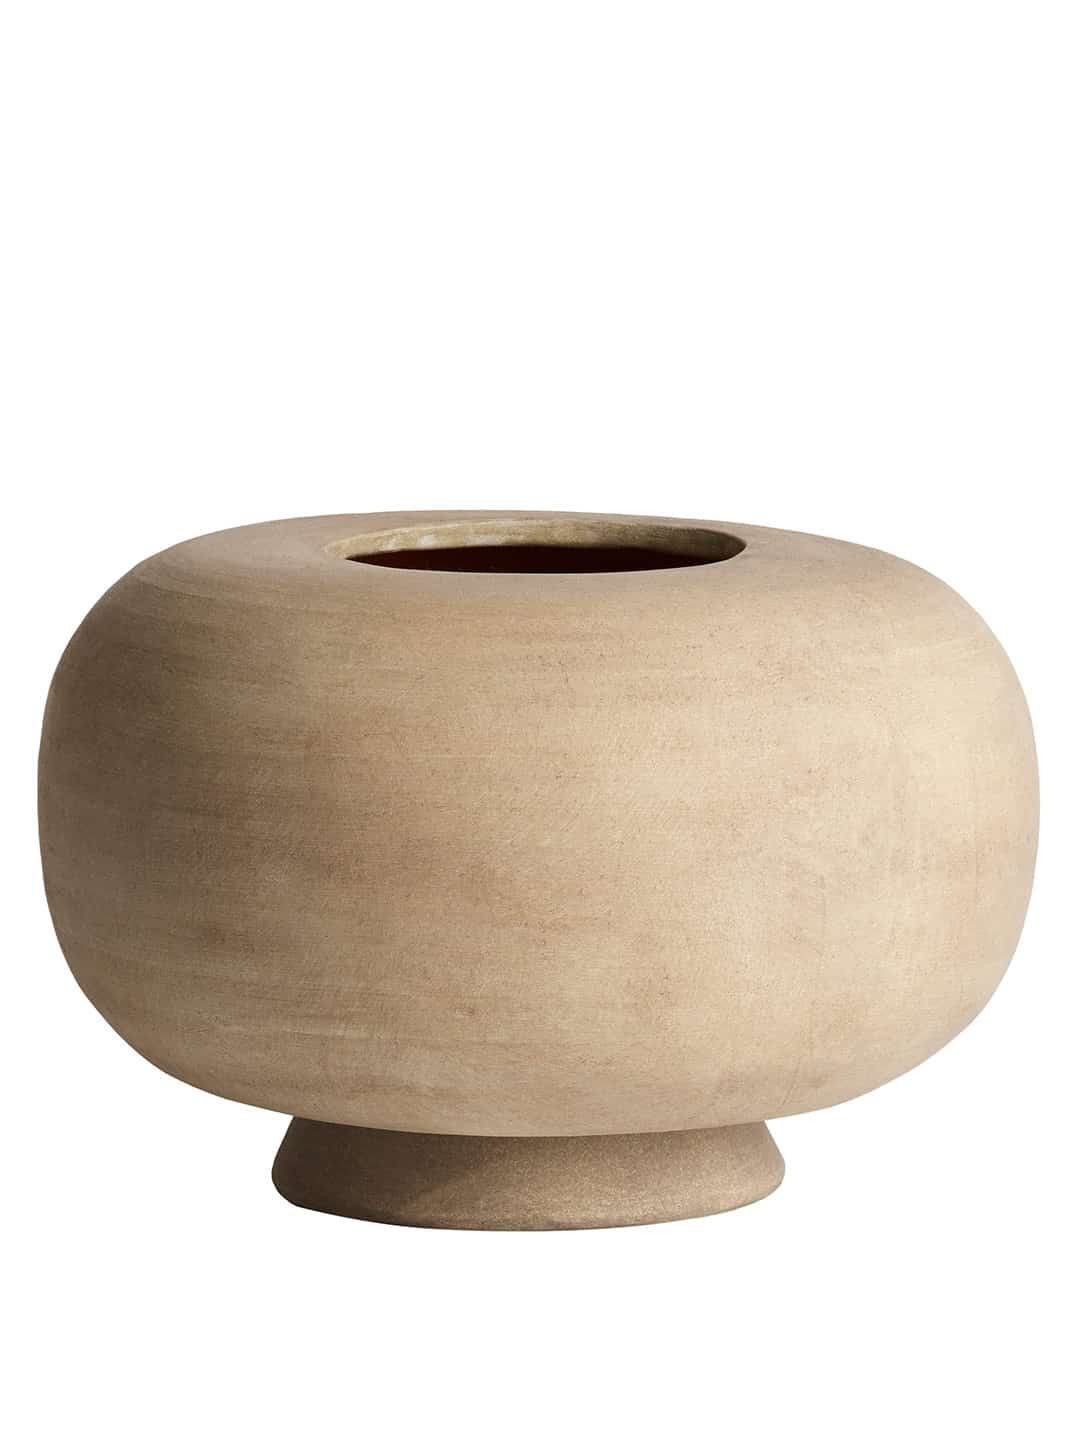 Керамическая овальная ваза ручной работы в скандинавском стиле 101Copenhagen Kabin Fat